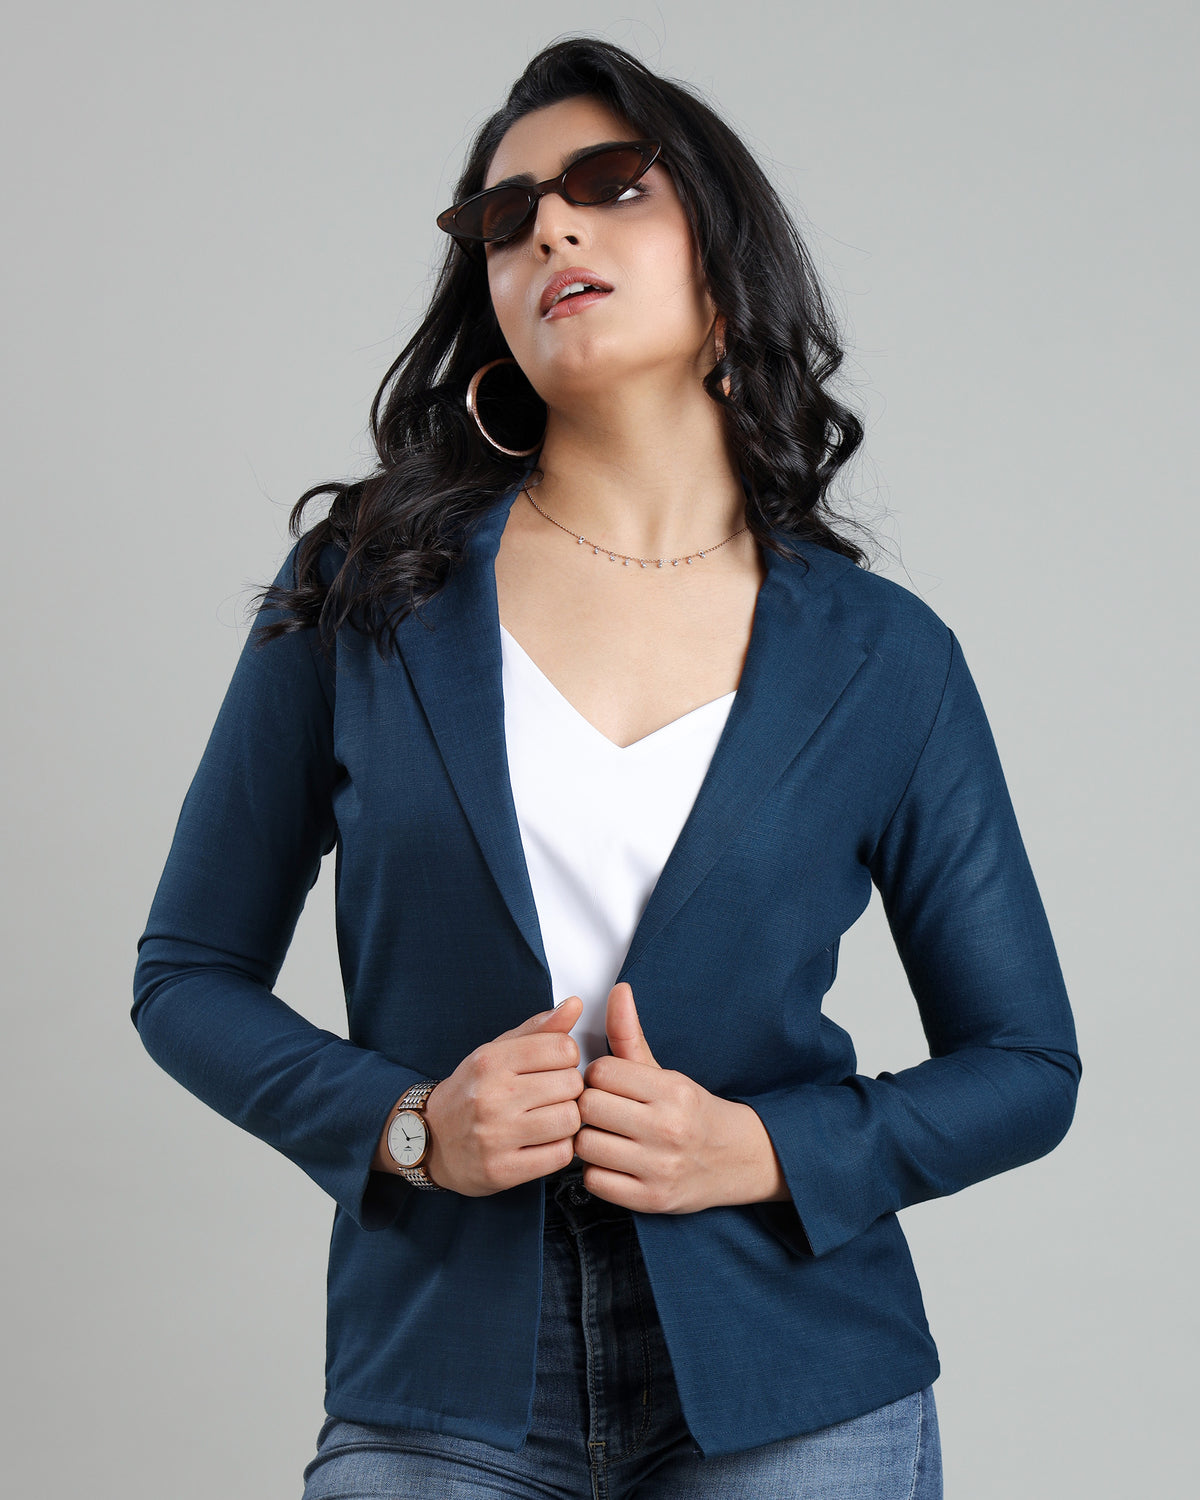 Elegant Edge: Tailored Jacket For Women